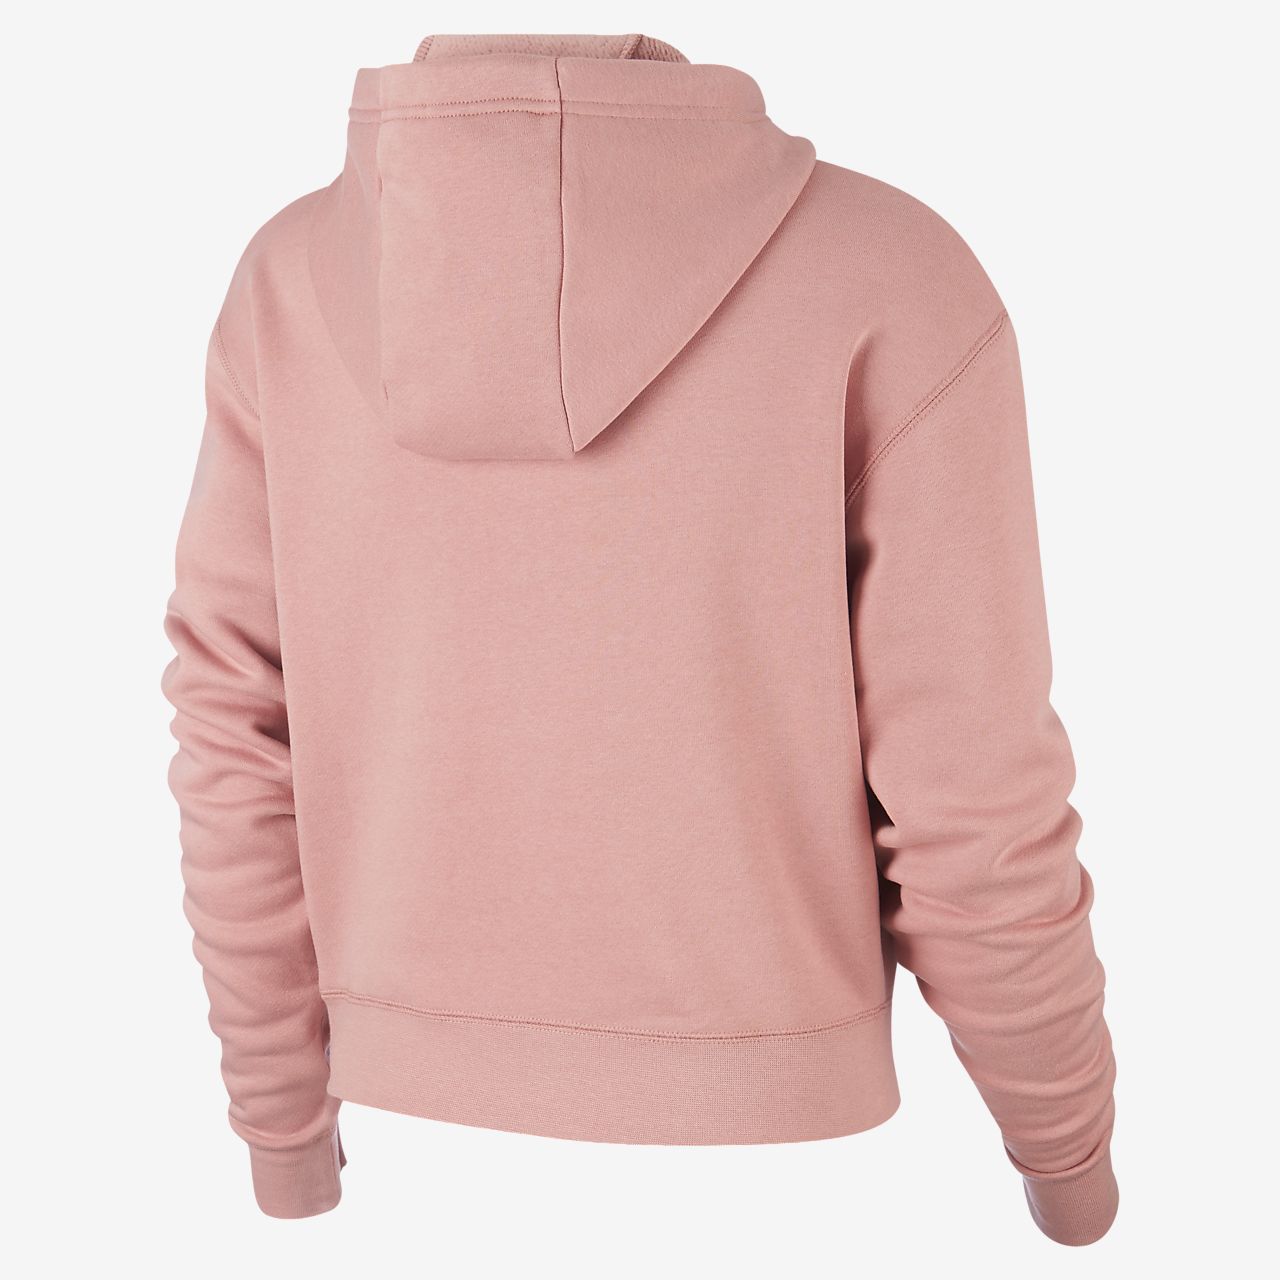 nike air hoodie pink